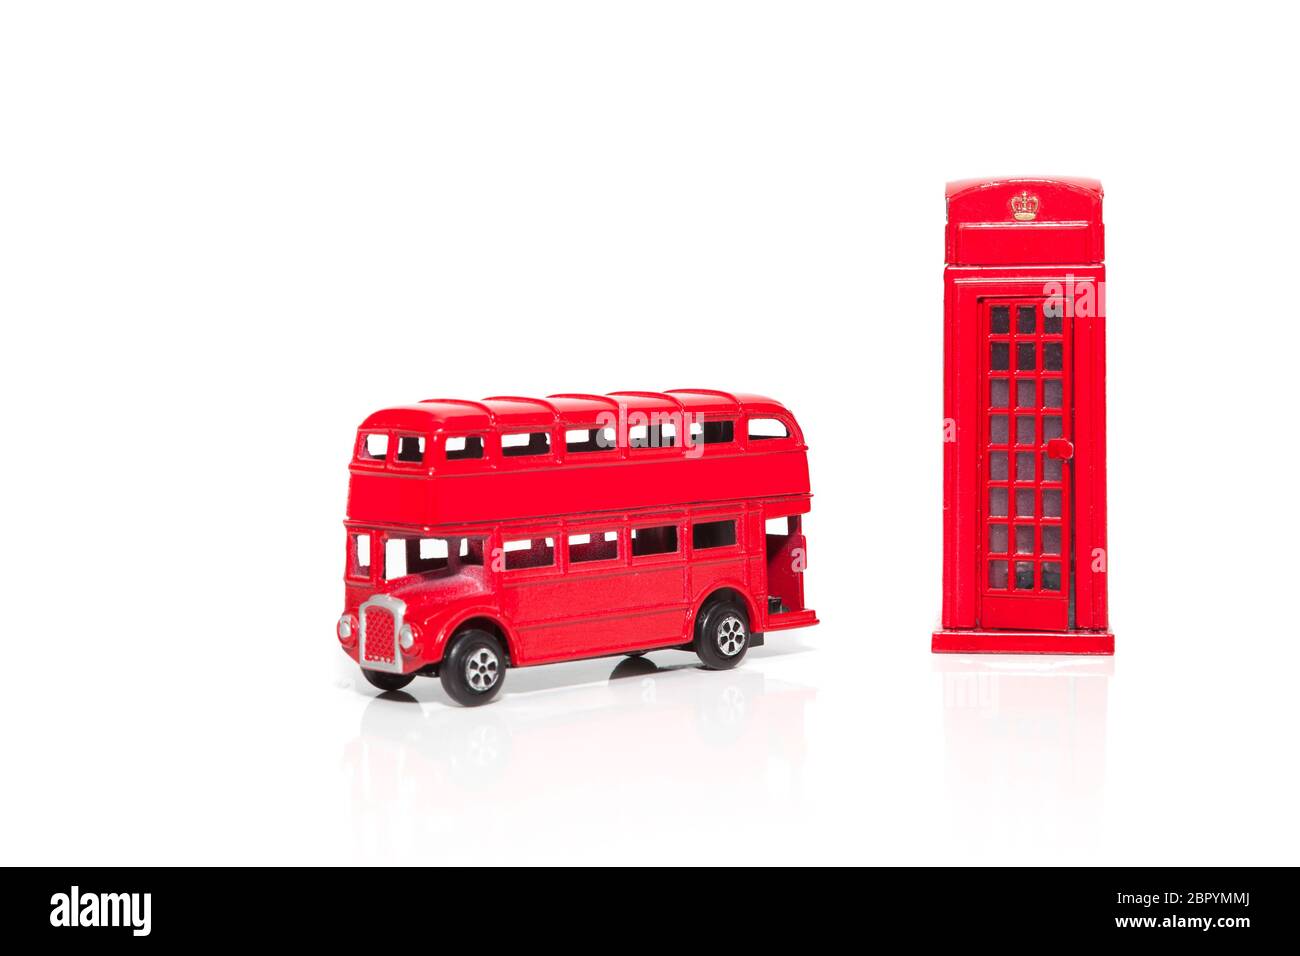 Souvenirs de Londres, cabine téléphonique rouge, bus à impériale symboles populaires de la ville. Isolé sur fond blanc Banque D'Images